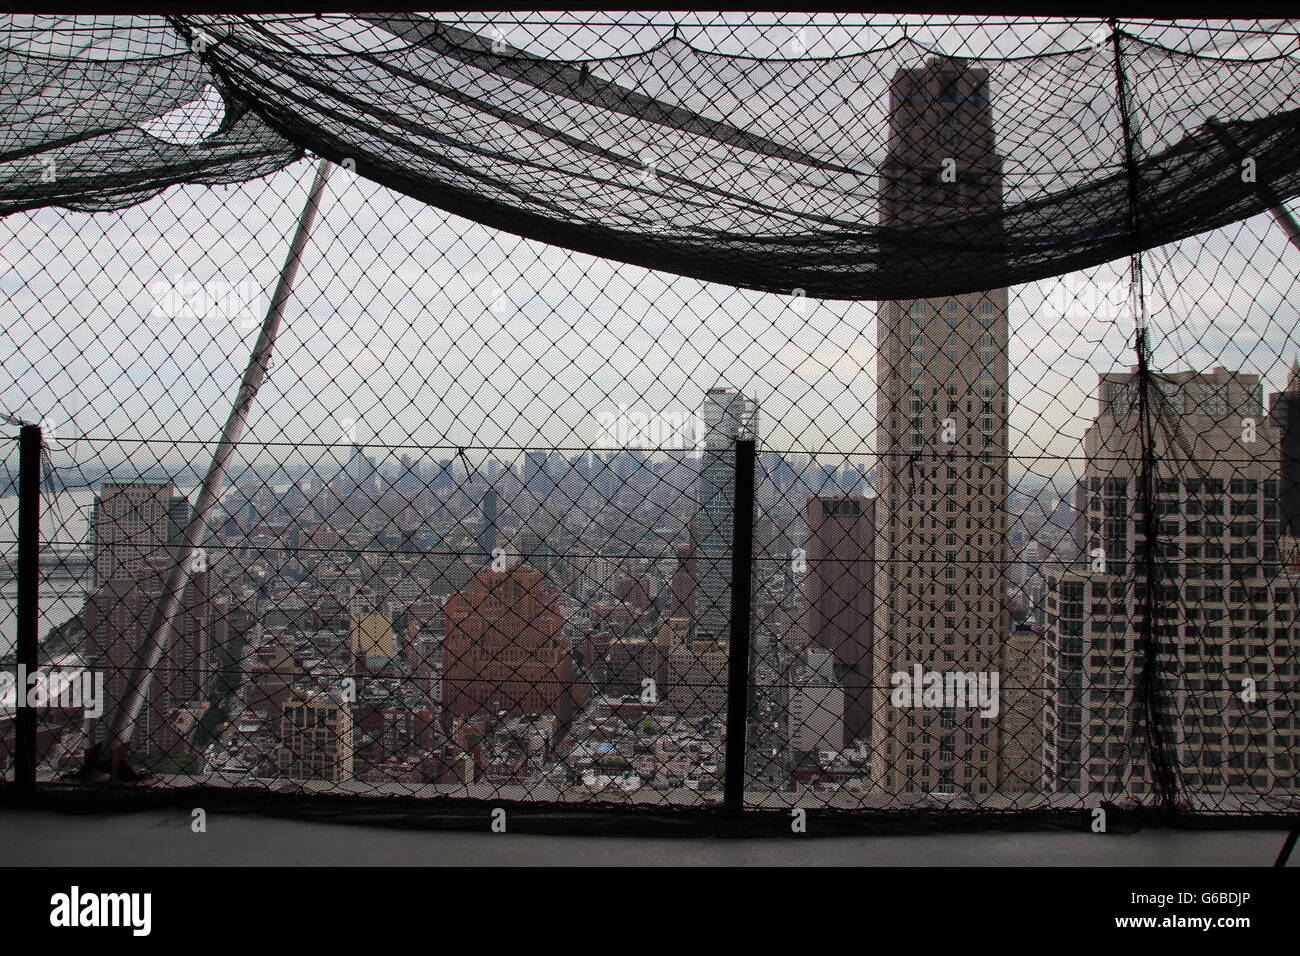 Vue depuis le 330 mètres de haut 'gratte-ciel 3 World Trade Center" à New York, États-Unis, 23 juin 2016. Une dernière rubrique de béton a été levé vers le haut lors de la "cérémonie de mise'. La structure en béton de l'édifice, catégorie gratte-ciel avec 80 niveaux est terminée. Jusqu'à l'ouverture prévue en 2018, une construction en acier et la façade en verre doivent être construites. PHOTO : CHRISTINA HORSTEN/dpa Banque D'Images